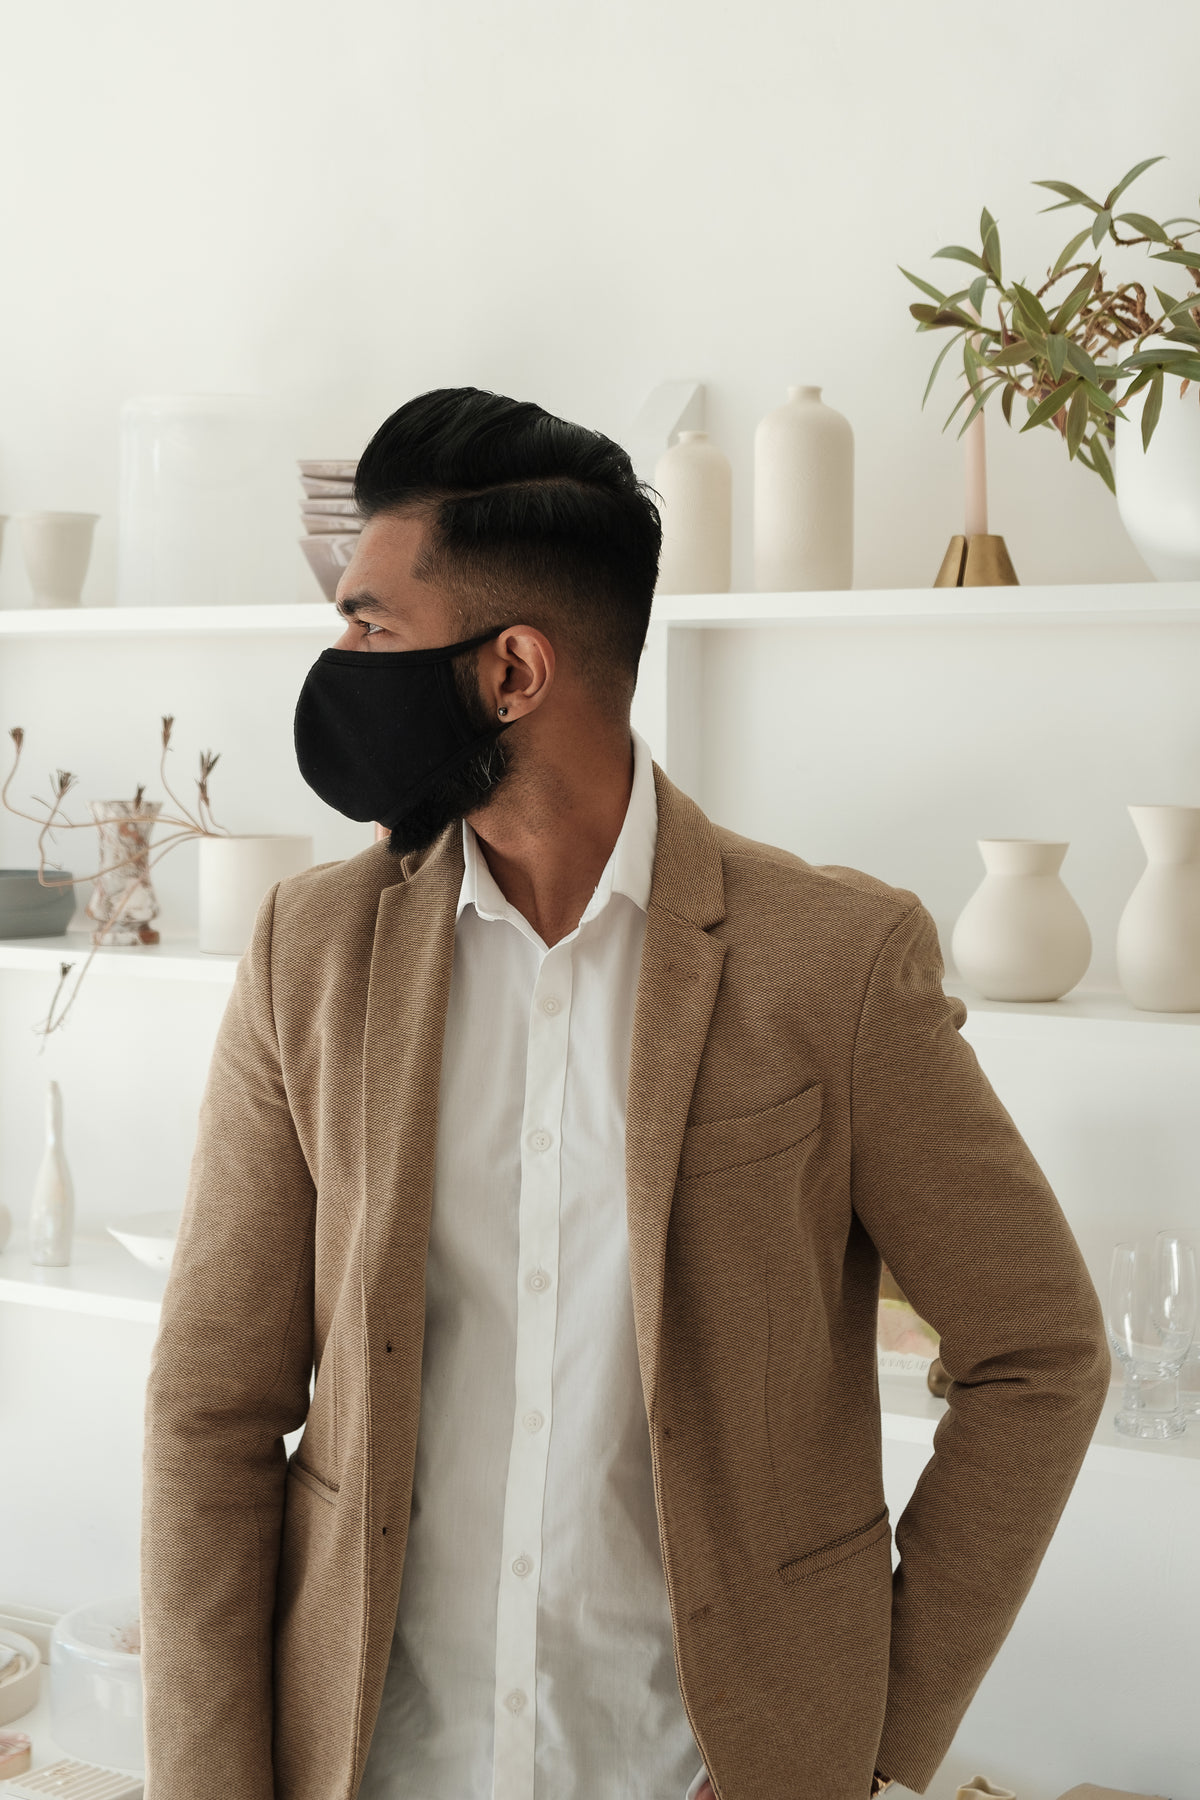 homem em frente a uma estante com objetos usando máscara facial preta